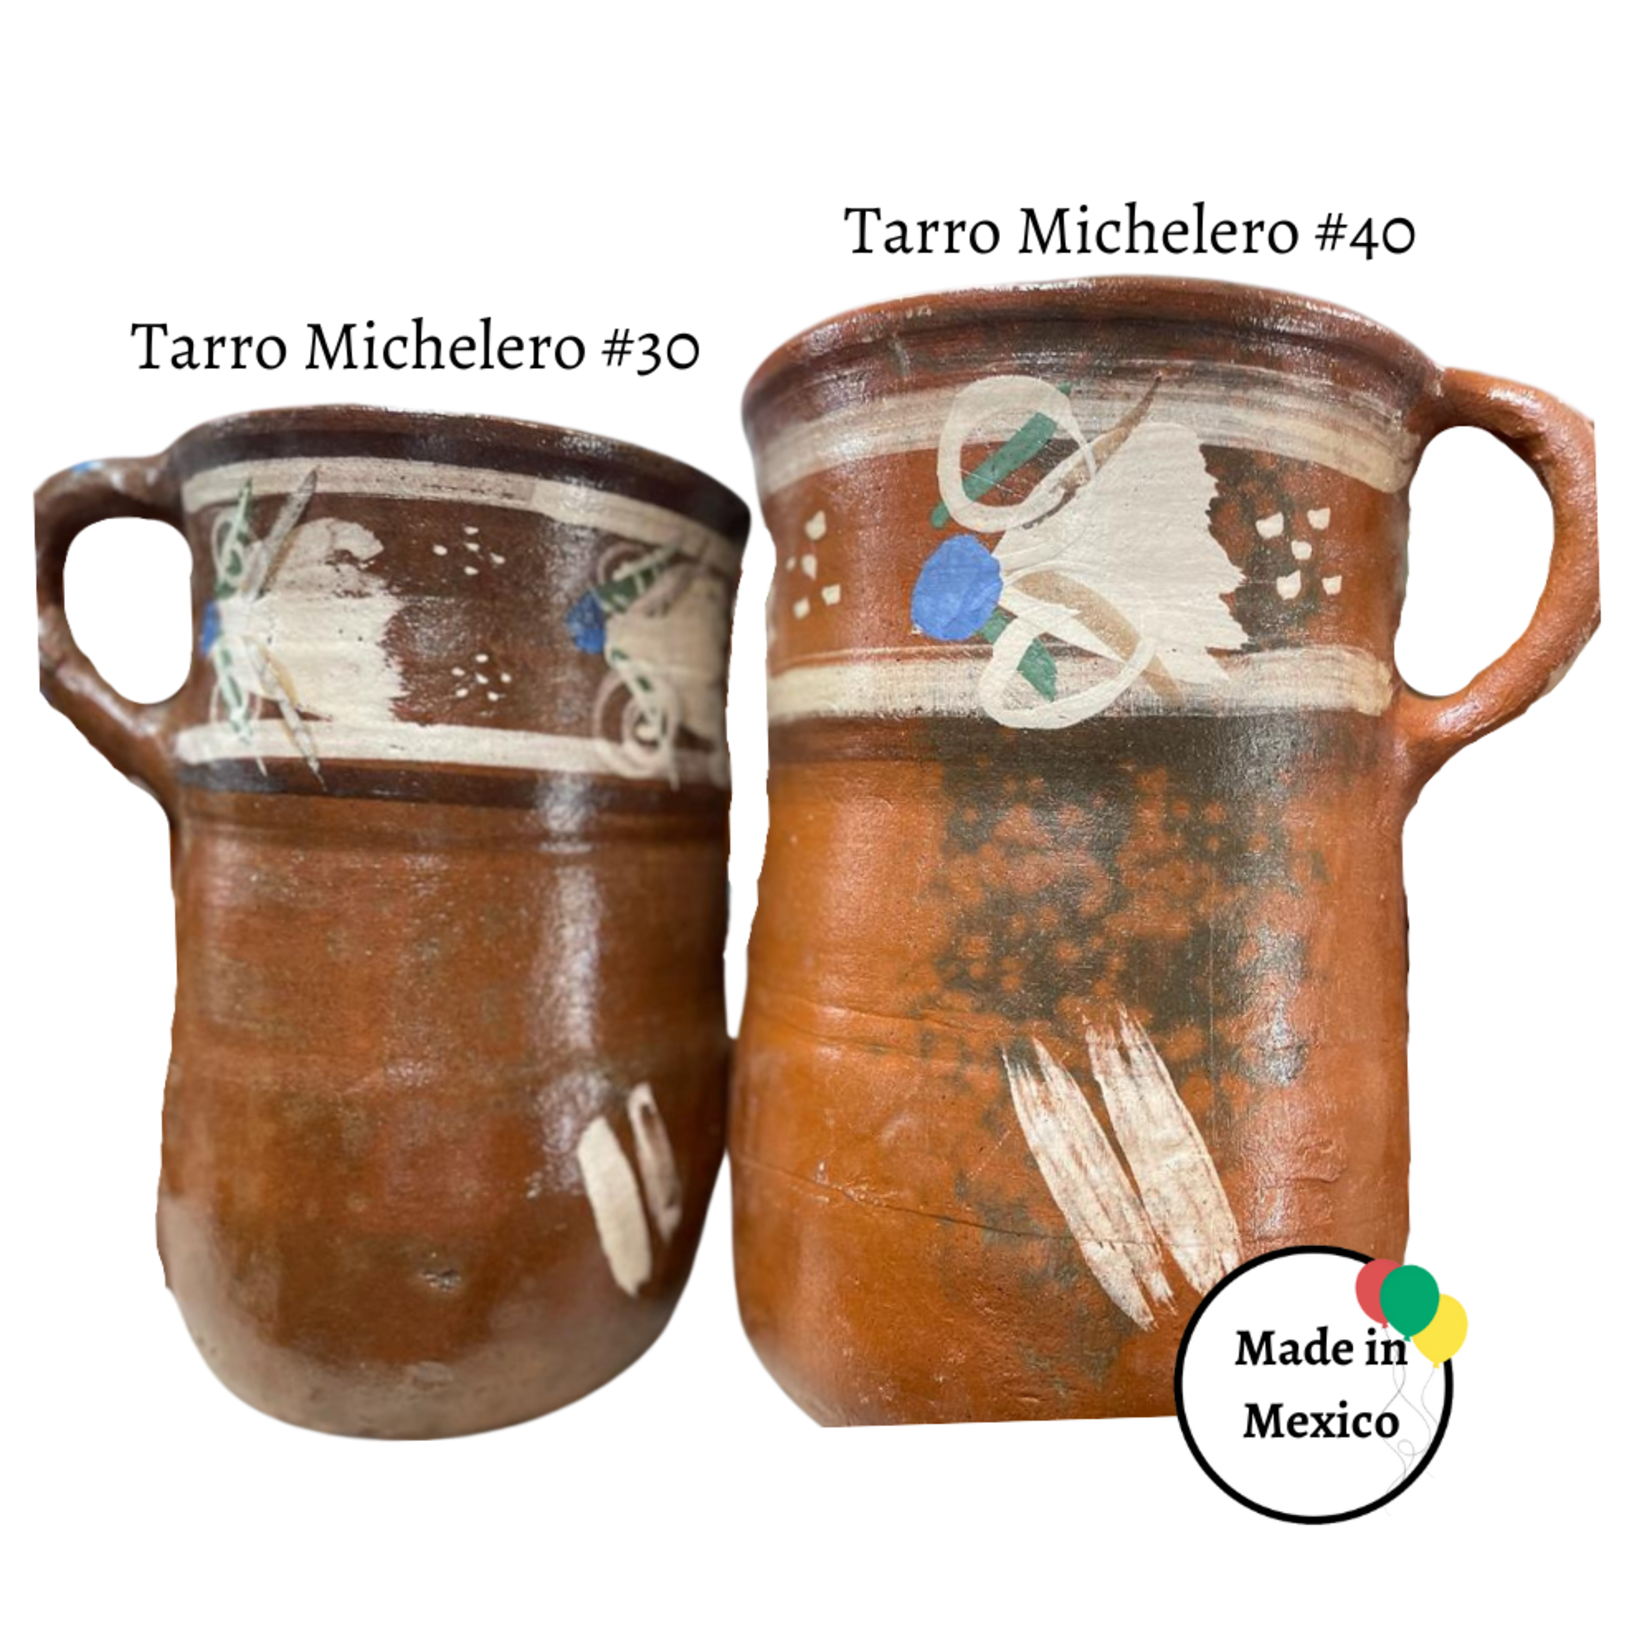 Tarro Michelero #30